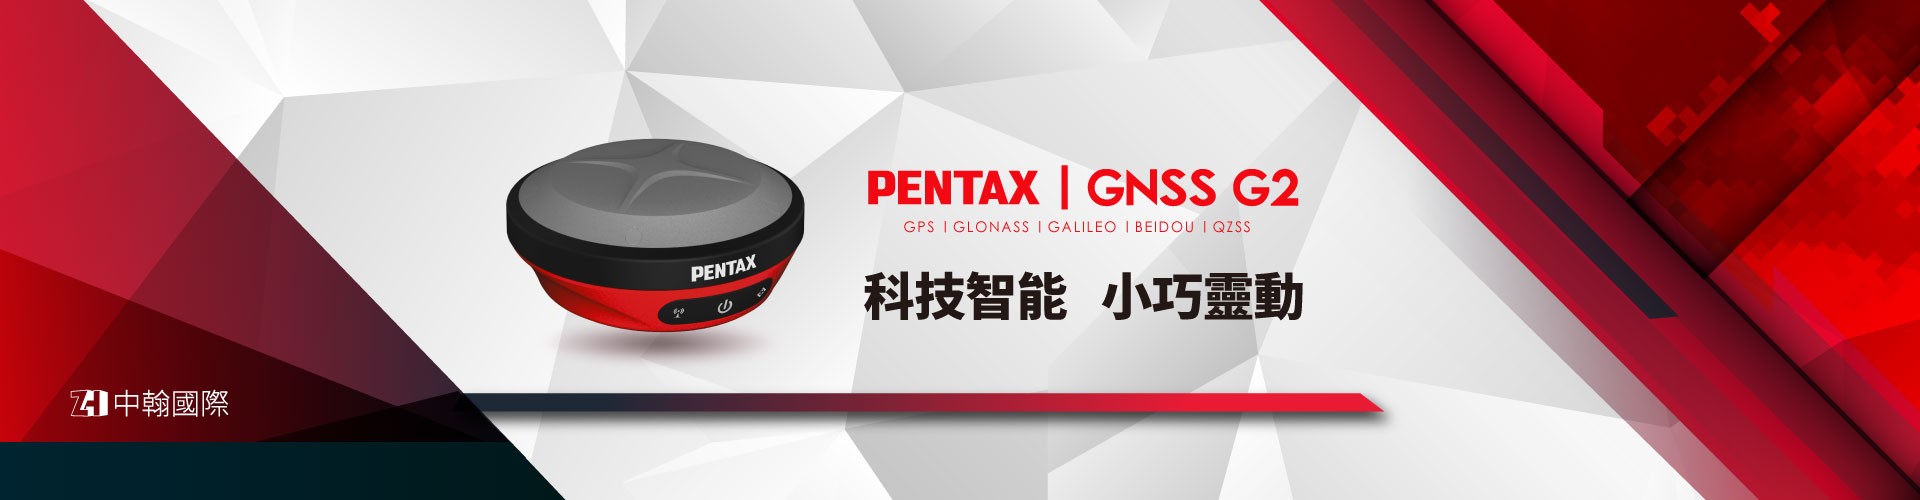 Pentax G2